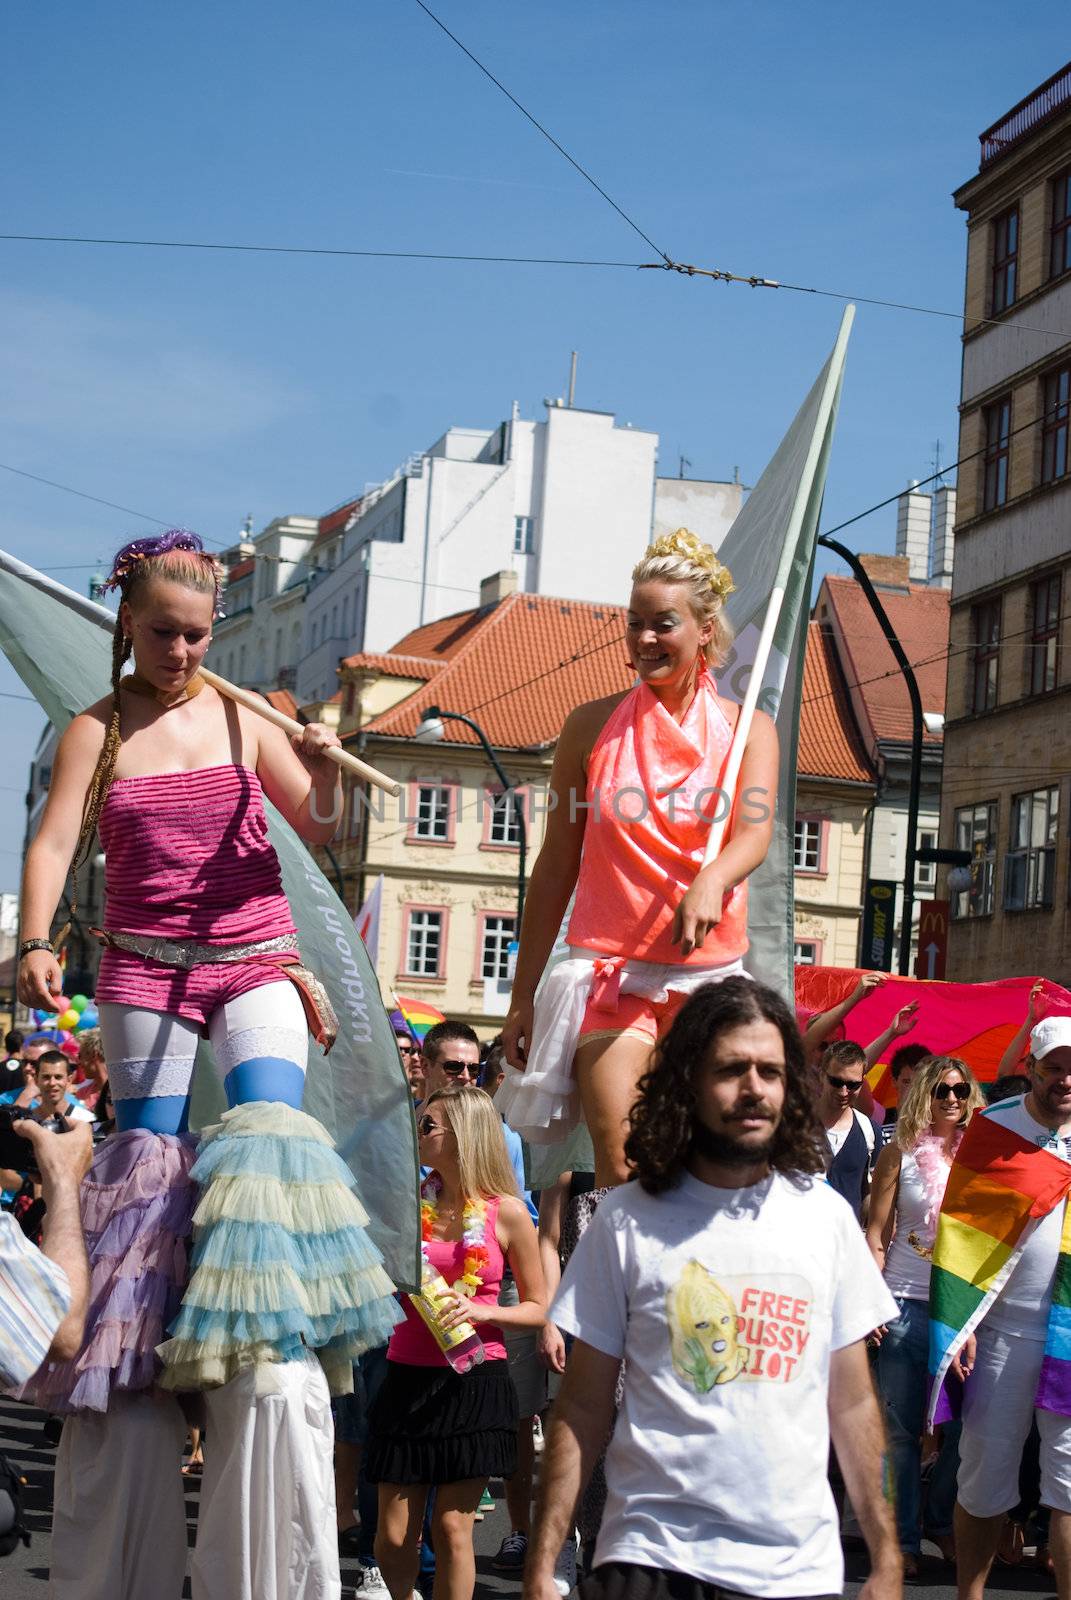 Prague pride parade by sarkao